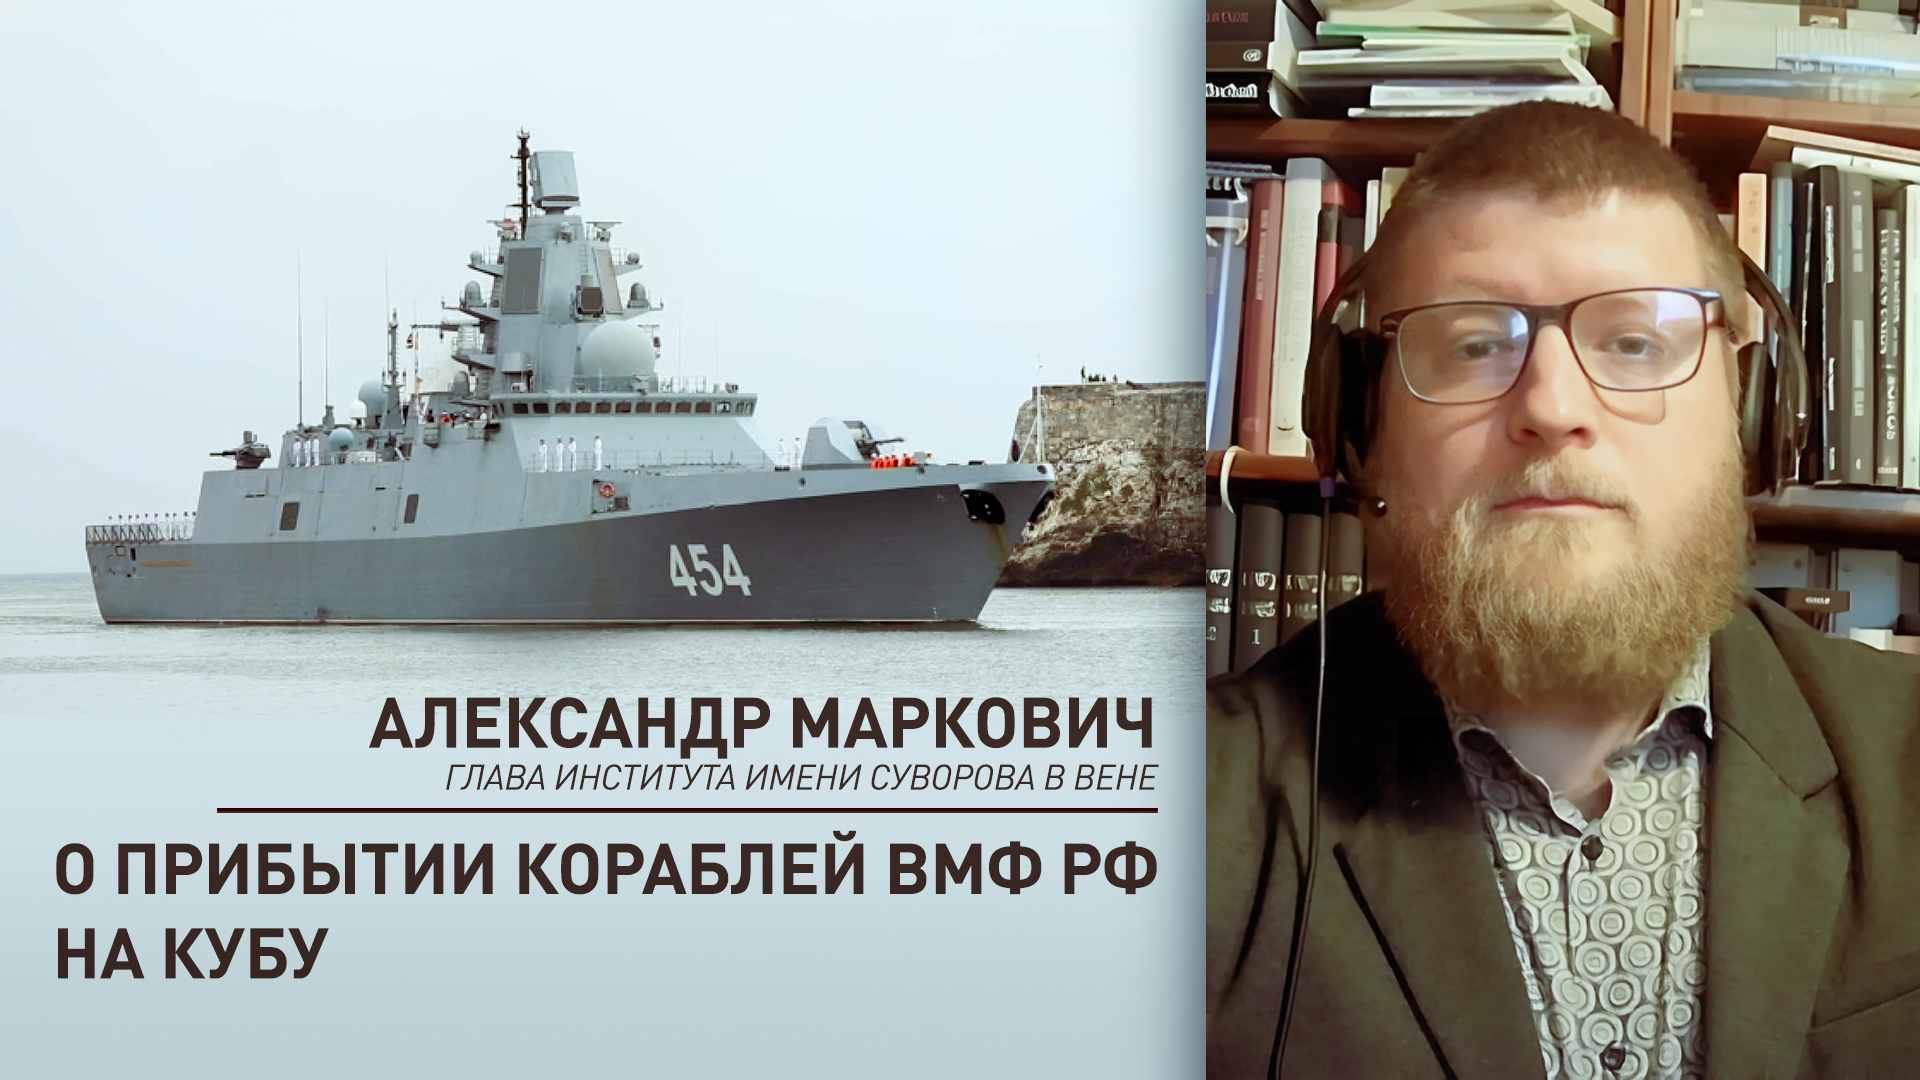 «Россия стремится защищать свободы народов»: эксперт — о заходе российских военных кораблей на Кубу